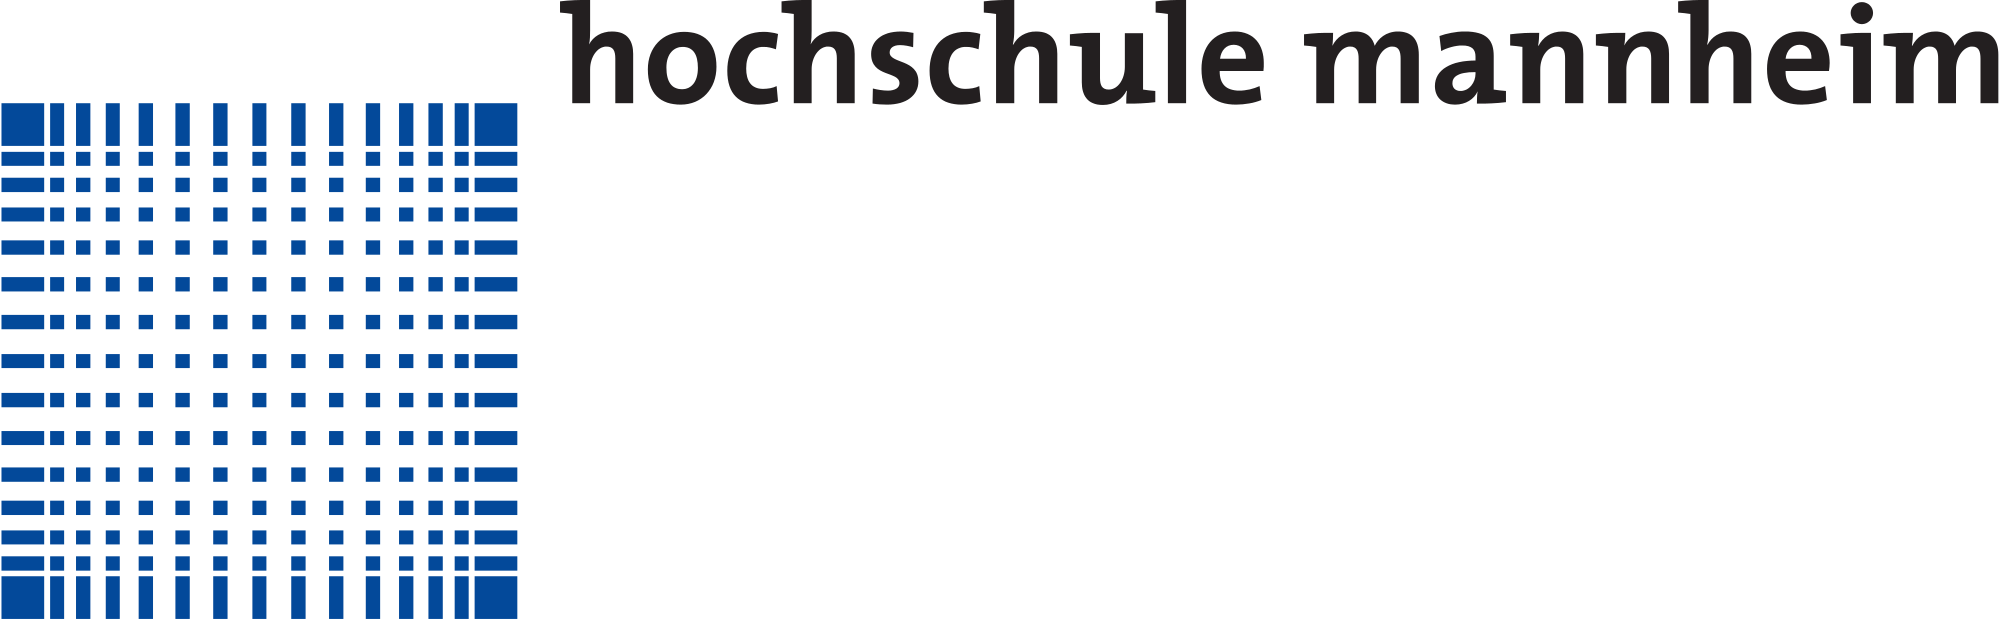 Logo der Hochschule Hochschule Mannheim